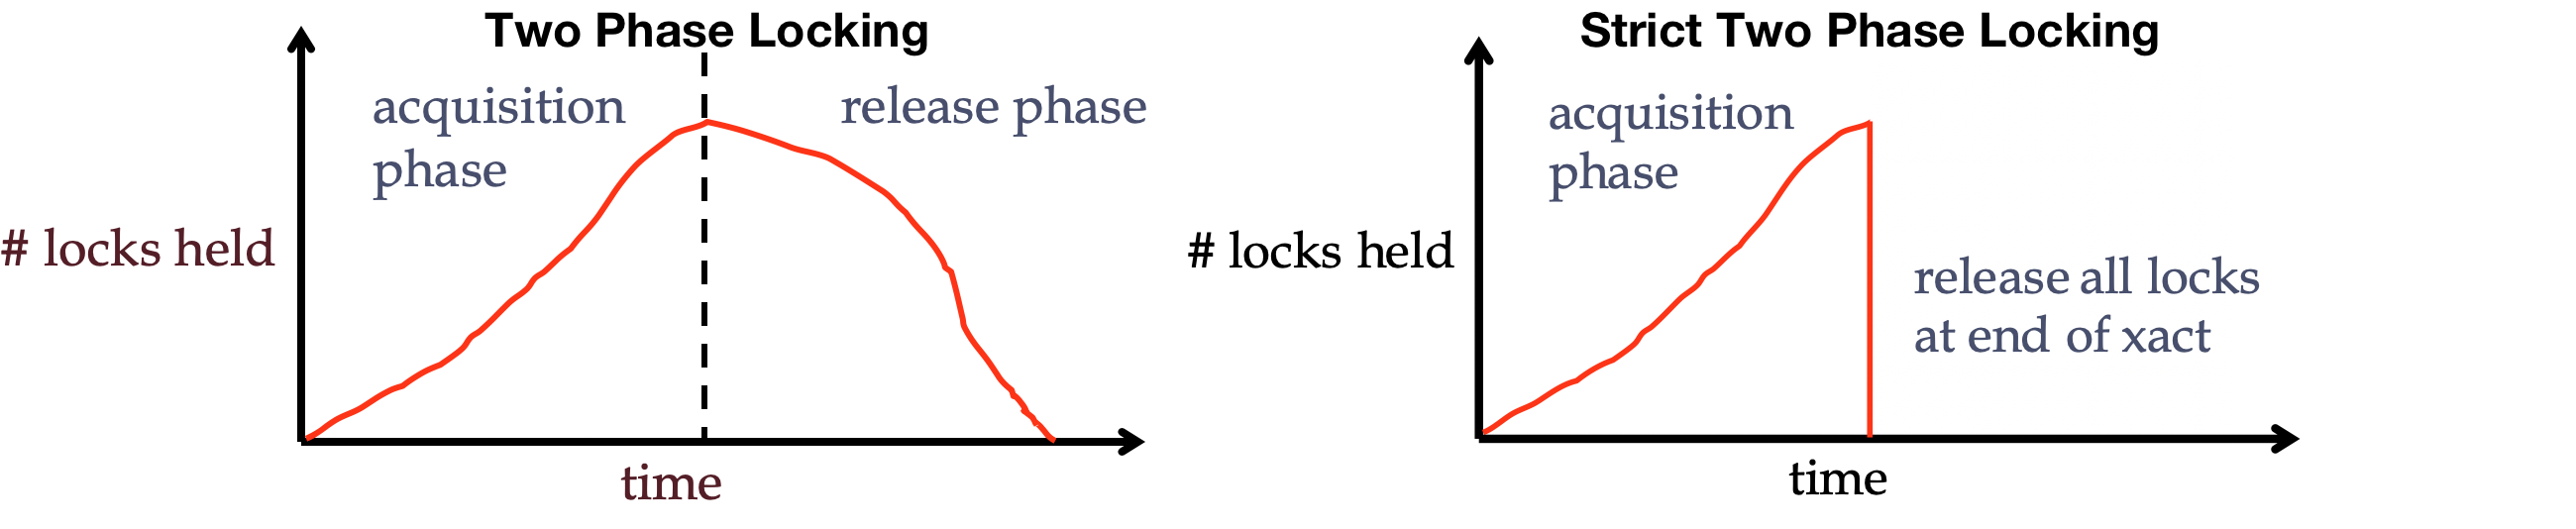 two_phase_locking